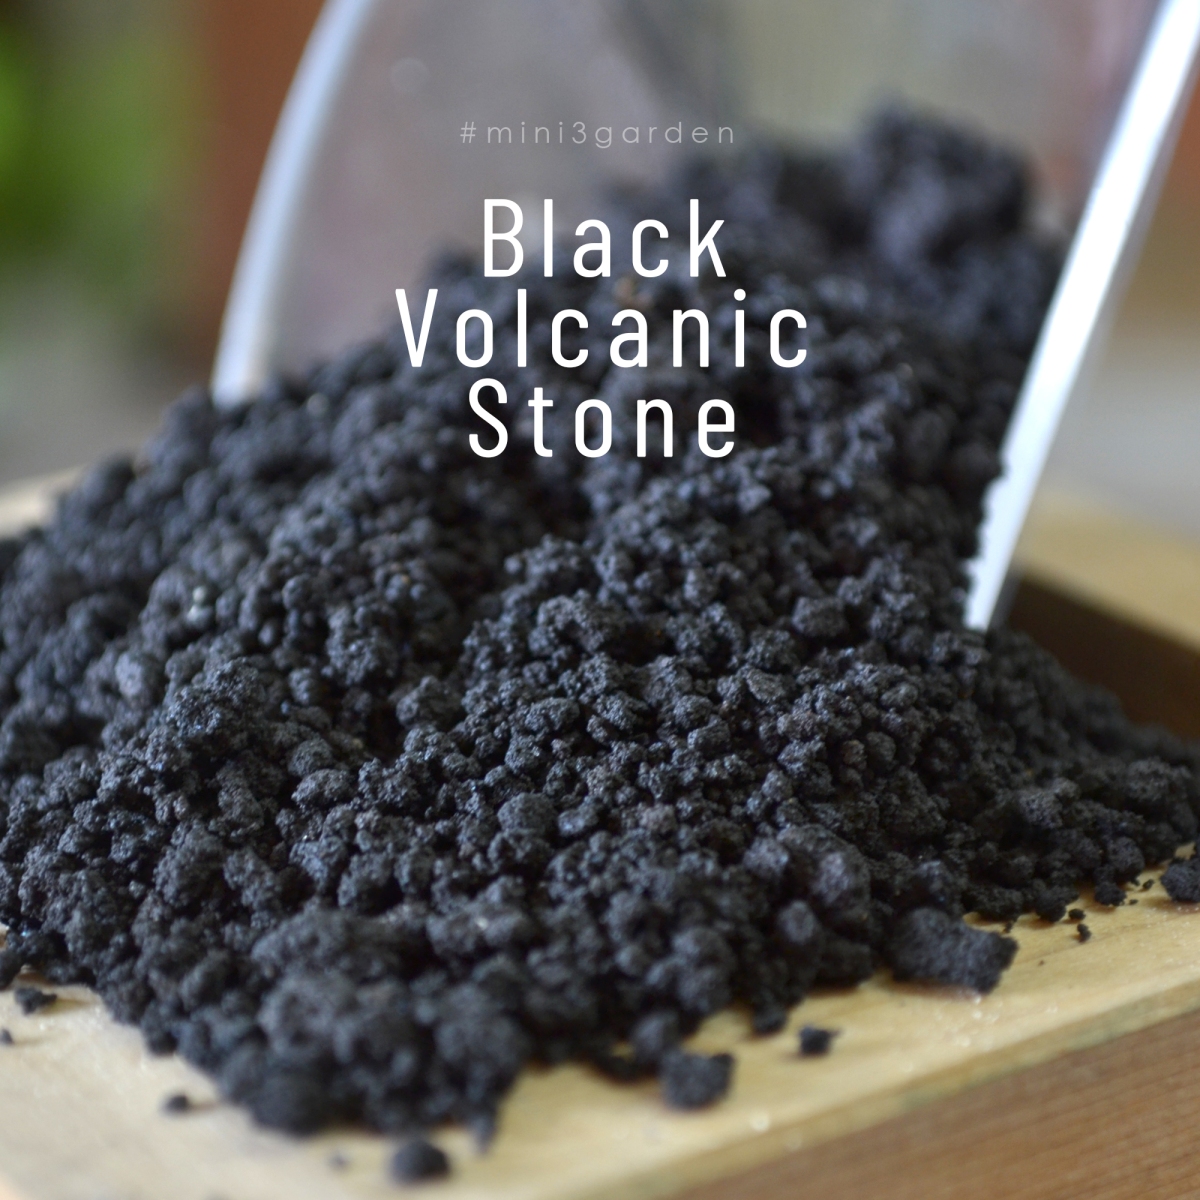 หินภูเขาไฟสีดำ หินลาวาดำ หินทรายสีดำ วัสดุปลูกพรีเมียม ( Black volcanic stone ) ใช้โรยหน้ากระถาง ผสมดินปลูก